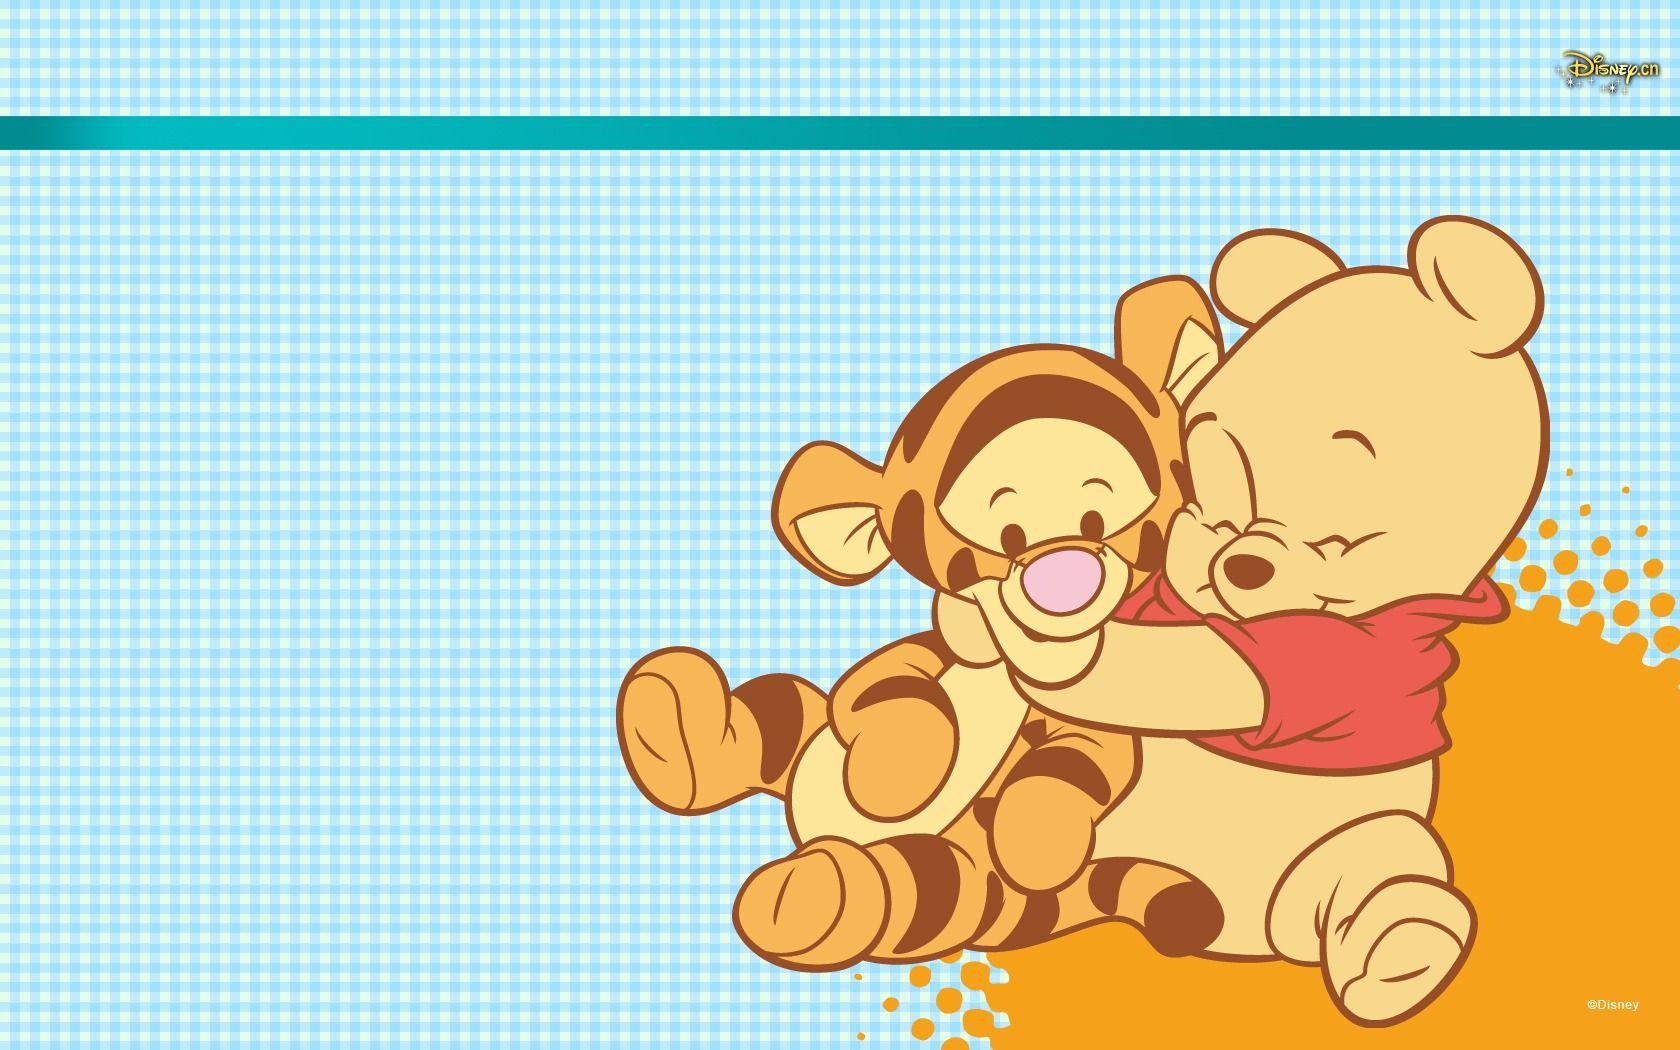 Walt Disney cartoon Winnie the Pooh wallpaper (2)